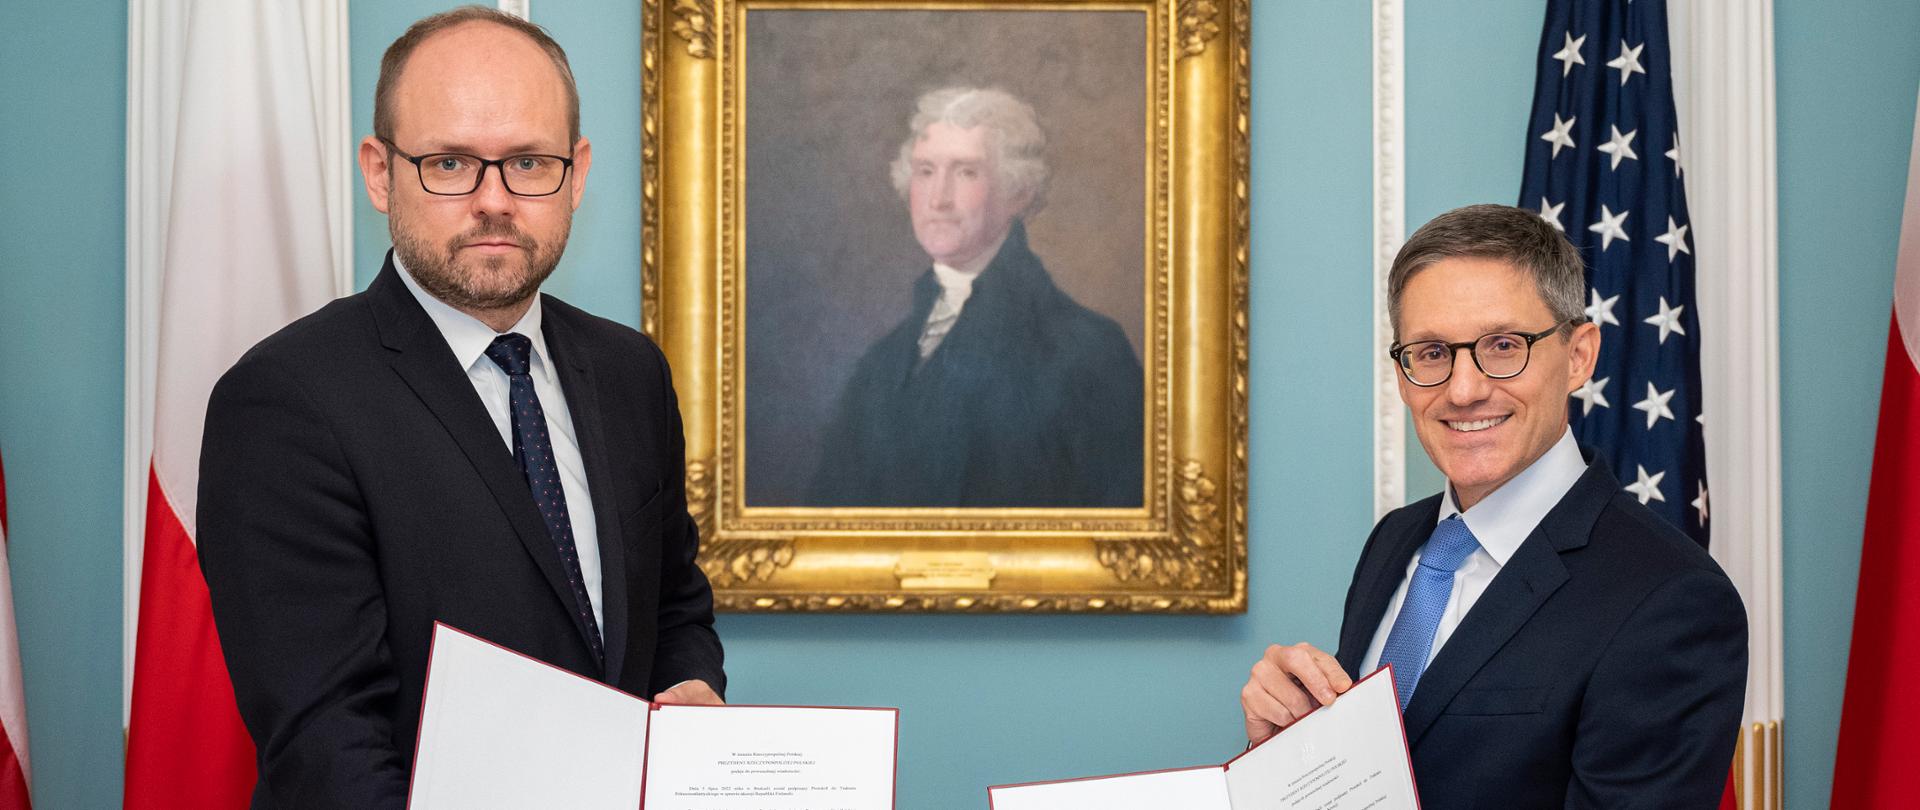 Wiceminister Marcin Przydacz złożył w Departamencie Stanu USA dokumenty ratyfikacyjne wyrażające zgodę Polski na przyjęcie Szwecji i Finlandii do NATO.
